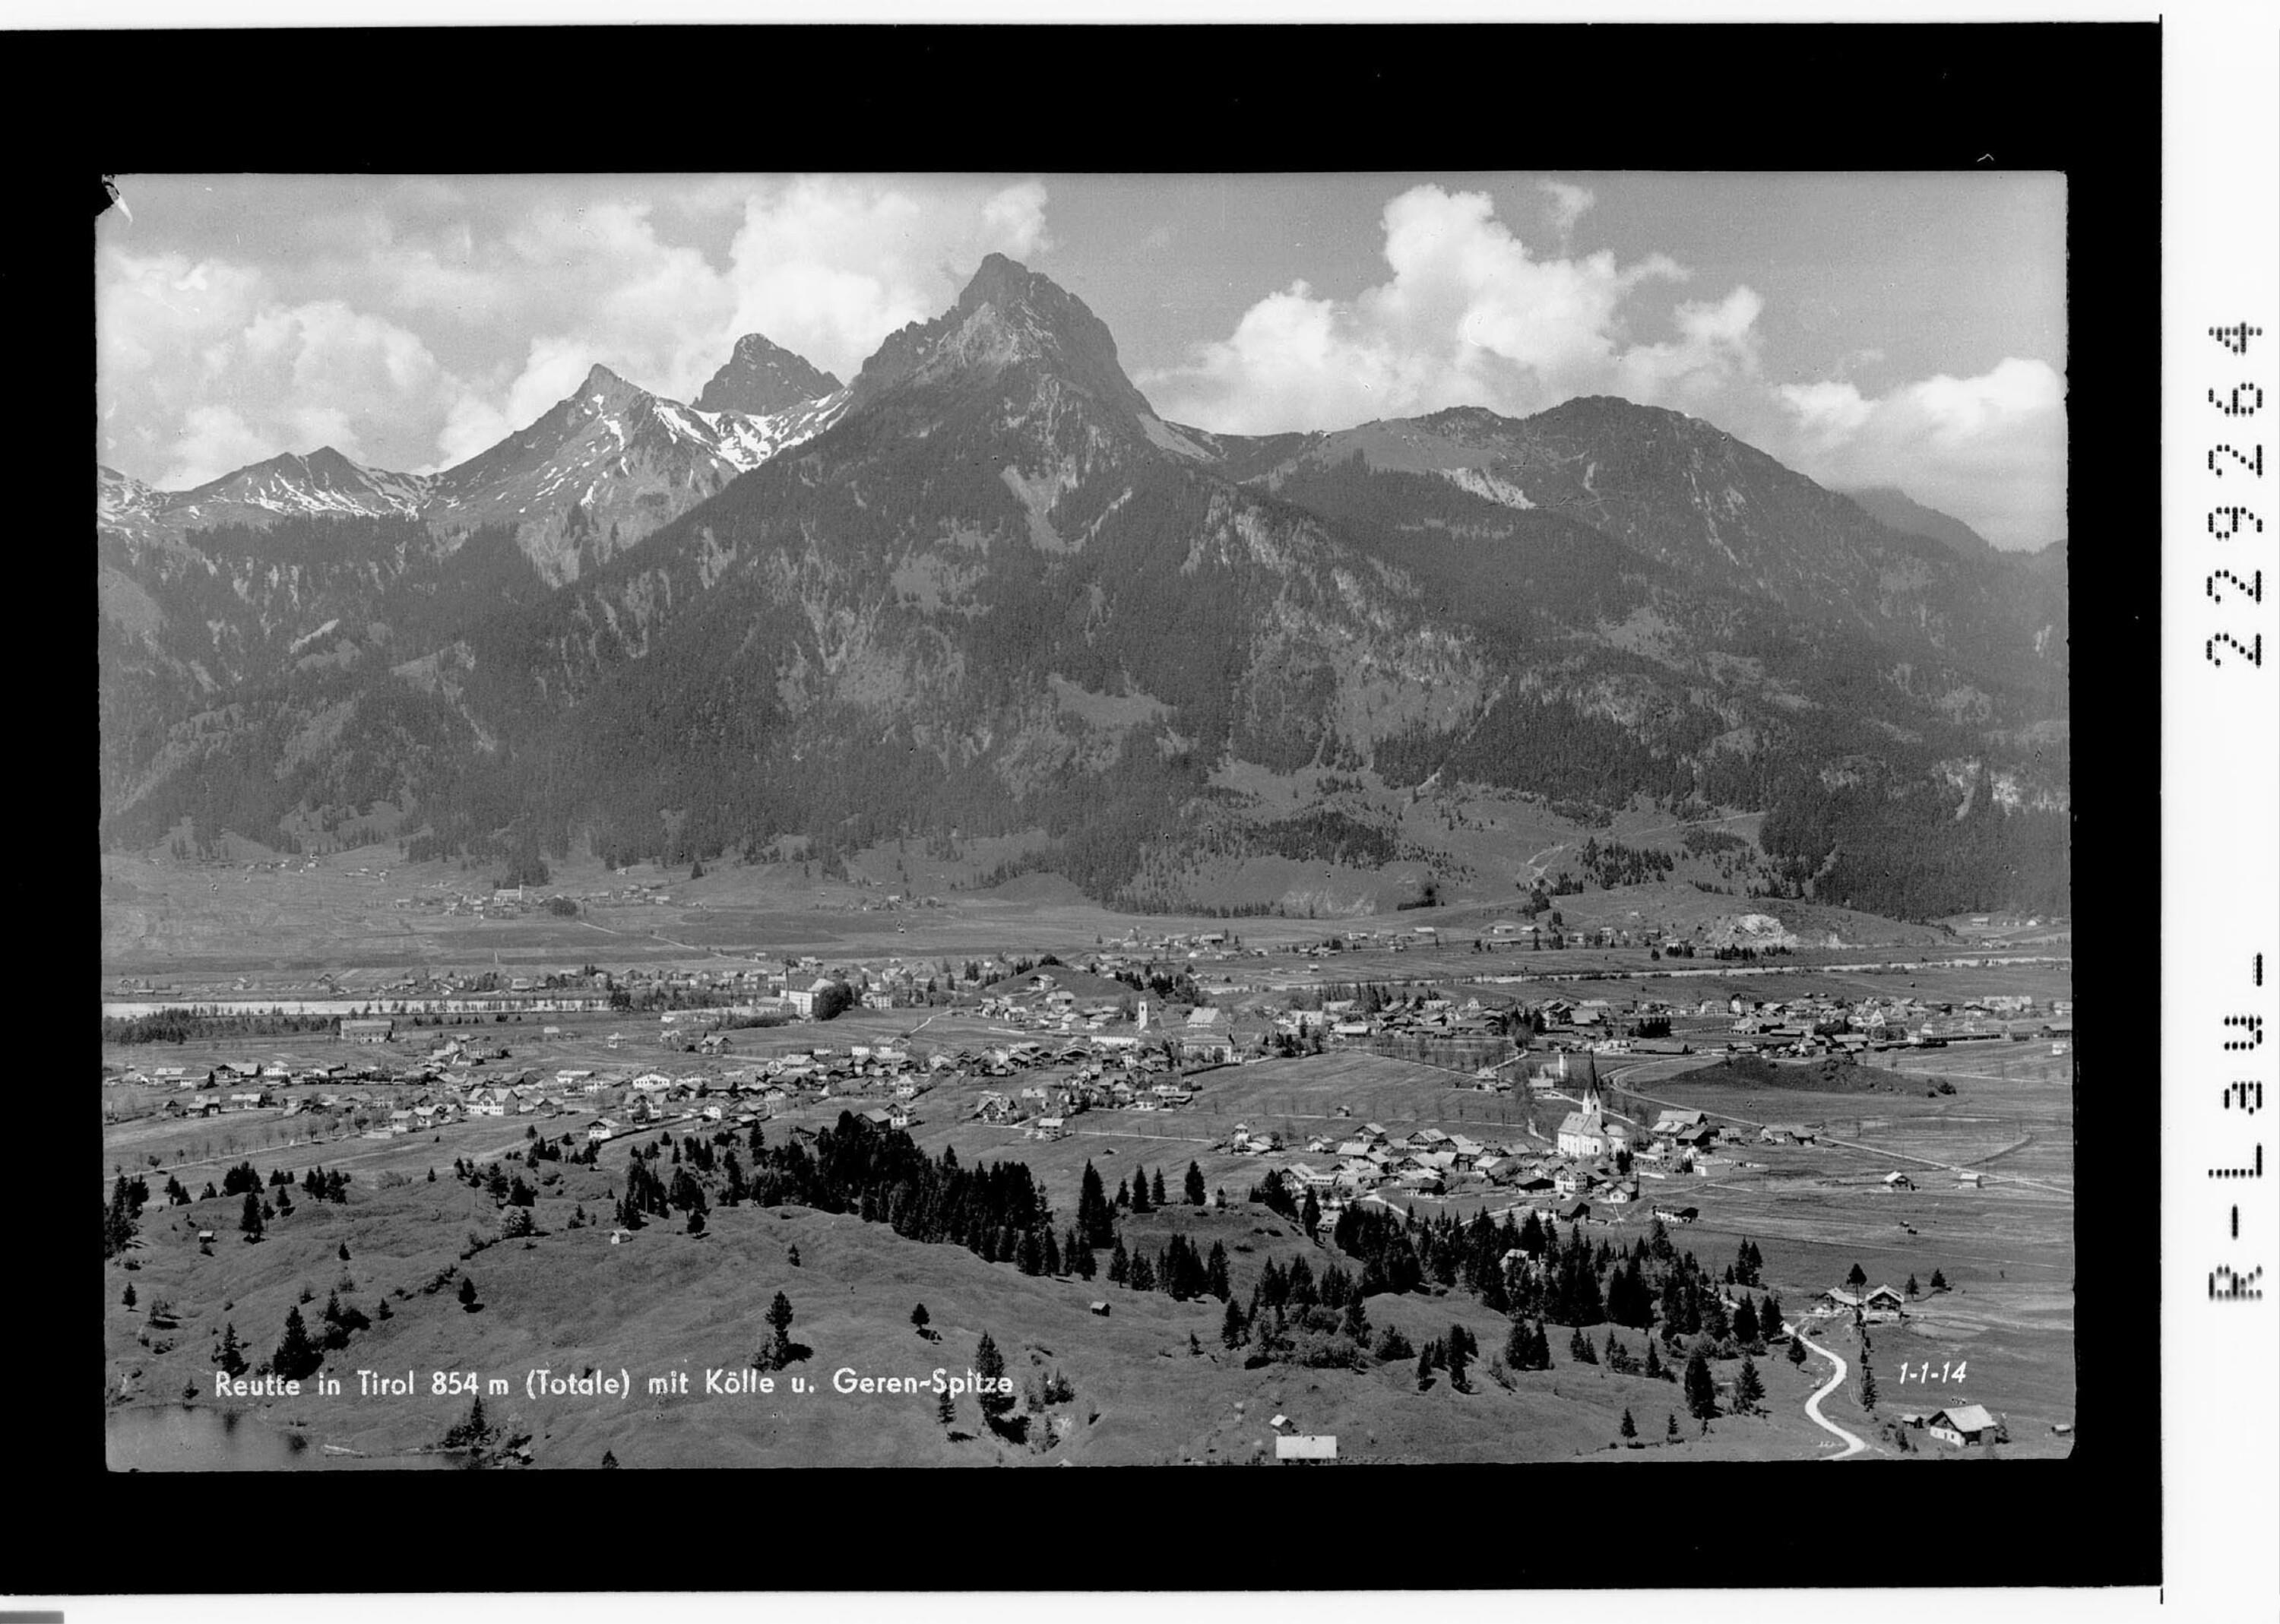 Reutte in Tirol 854 m mit Kölle- und Gehren Spitze></div>


    <hr>
    <div class=